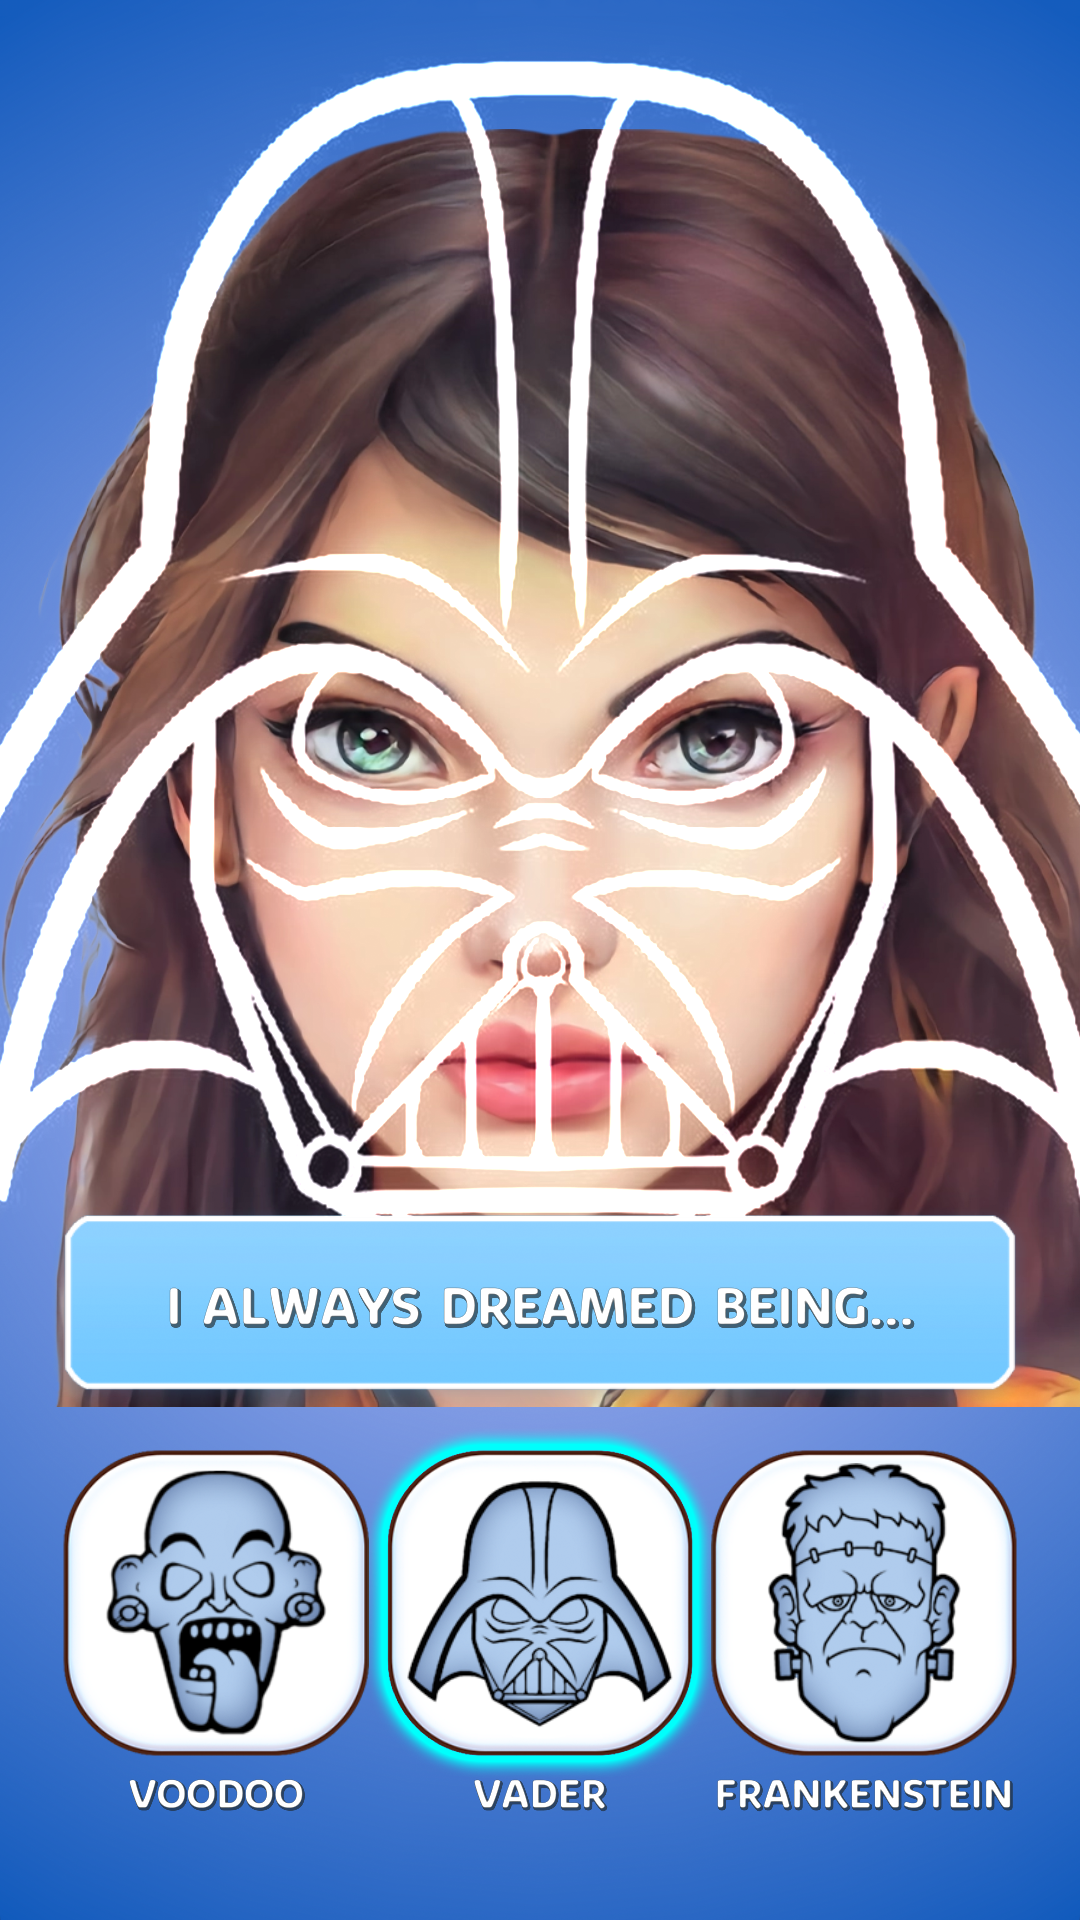 Golden Ratio - Perfect Face screenshot game